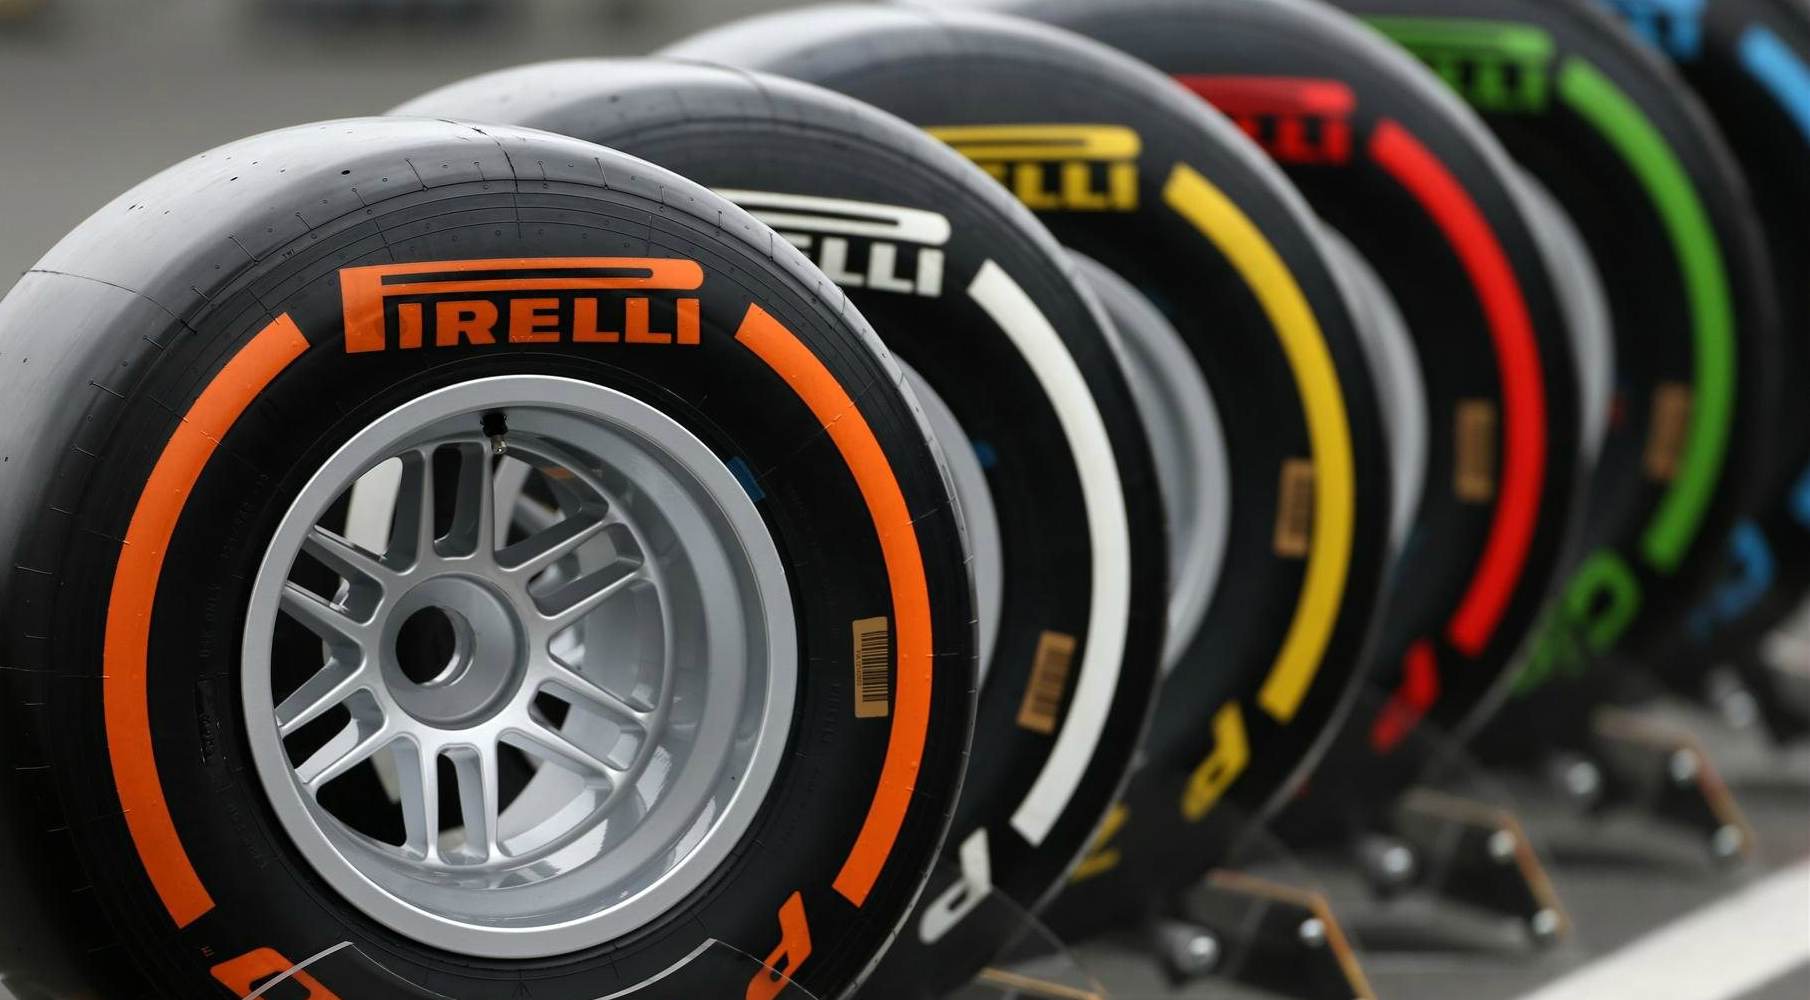 La compañía aliada de Fórmula 1 publicó la lista de neumáticos con los que contarán los pilotos para los Grandes Premios de Australia, Bahrein y China